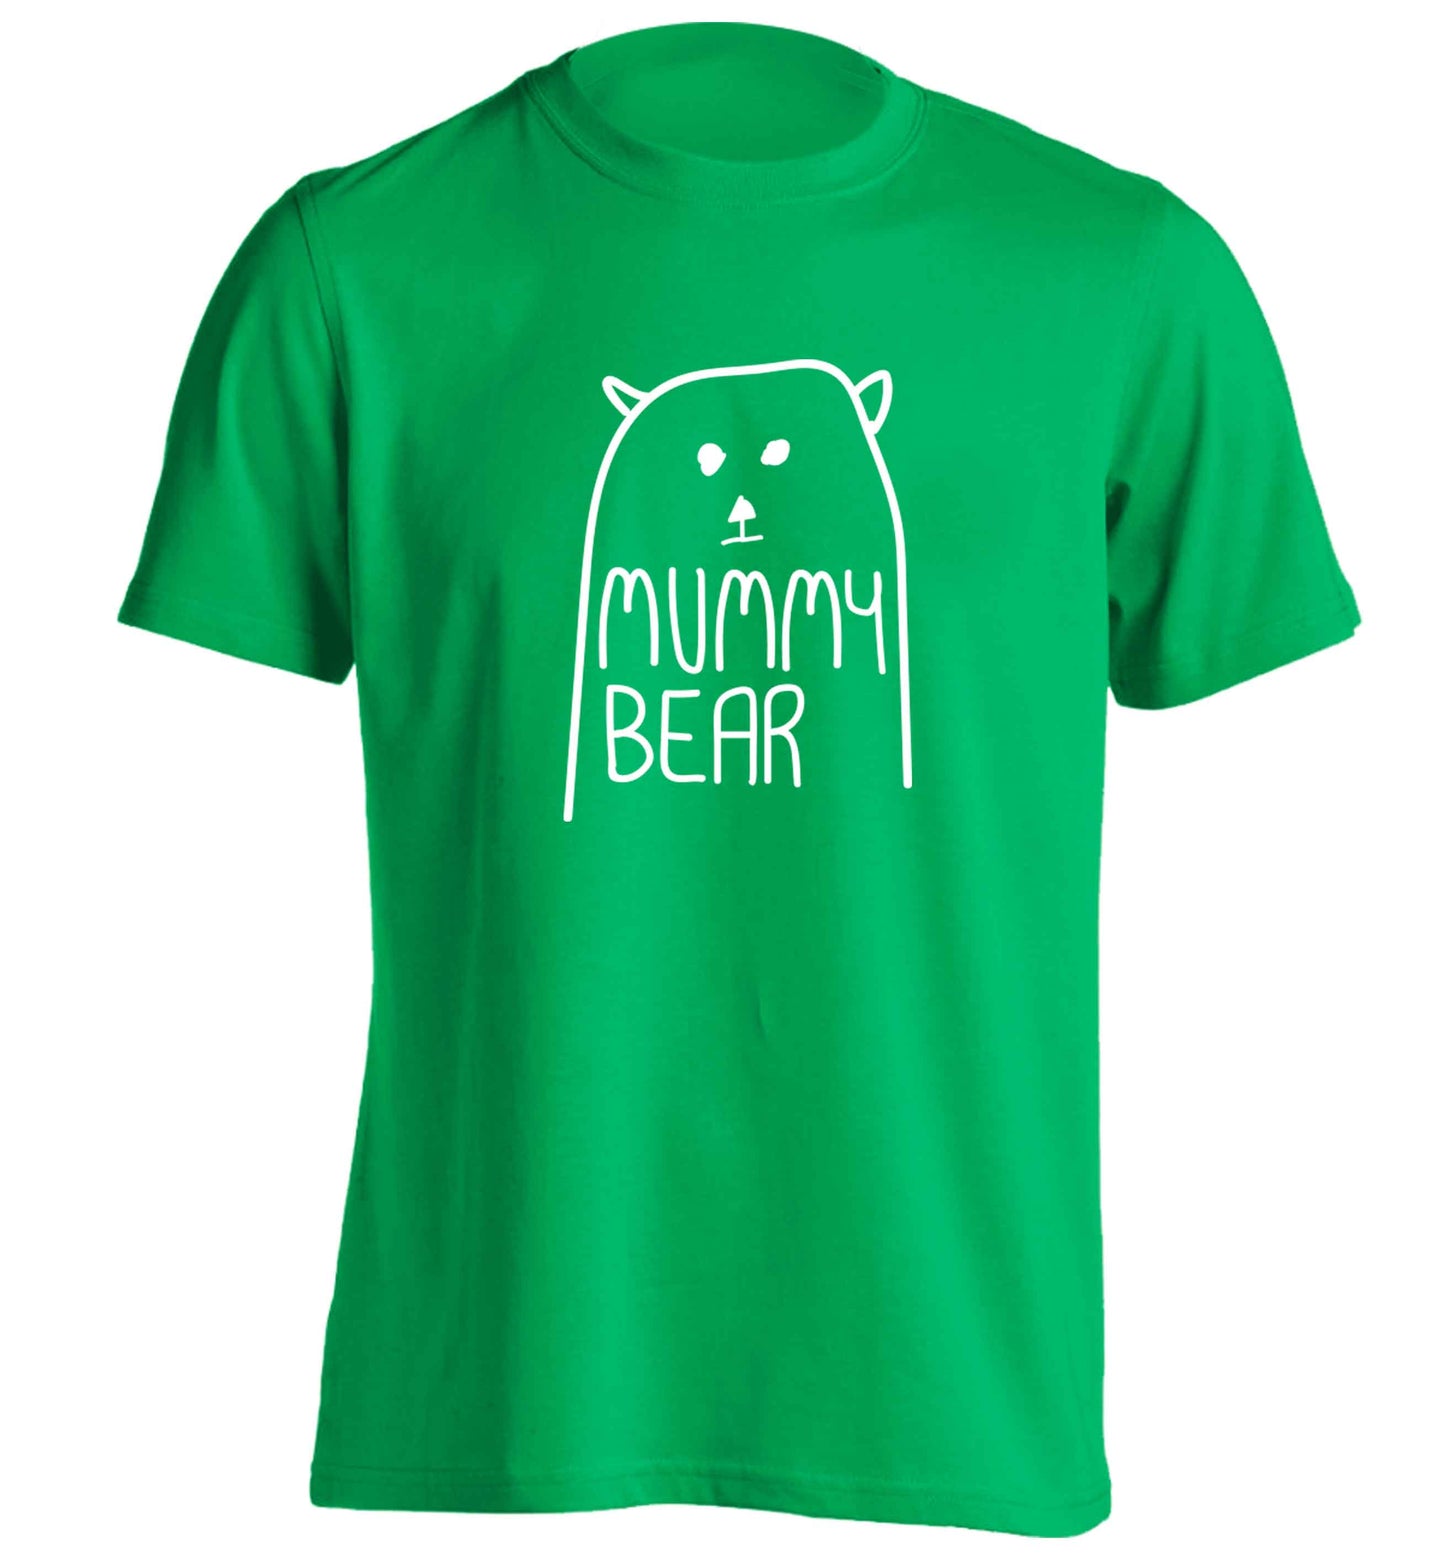 Mummy bear adults unisex green Tshirt 2XL